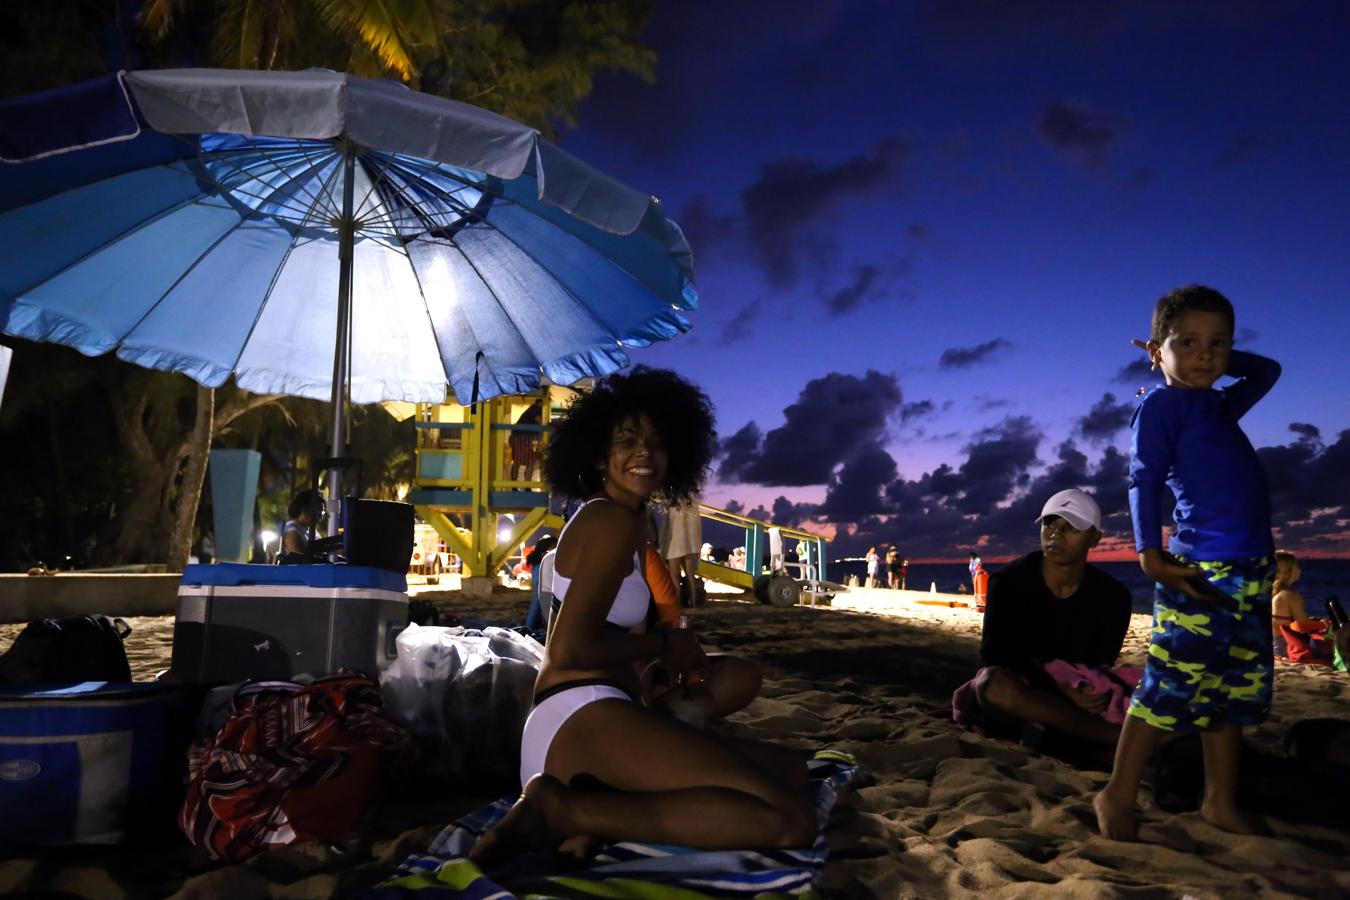 Cientos de personas acudieron a la playa del Escambrón, en San Juan (Puerto Rico), la noche del viernes 23 de junio, para celebrar la Noche de San Juan